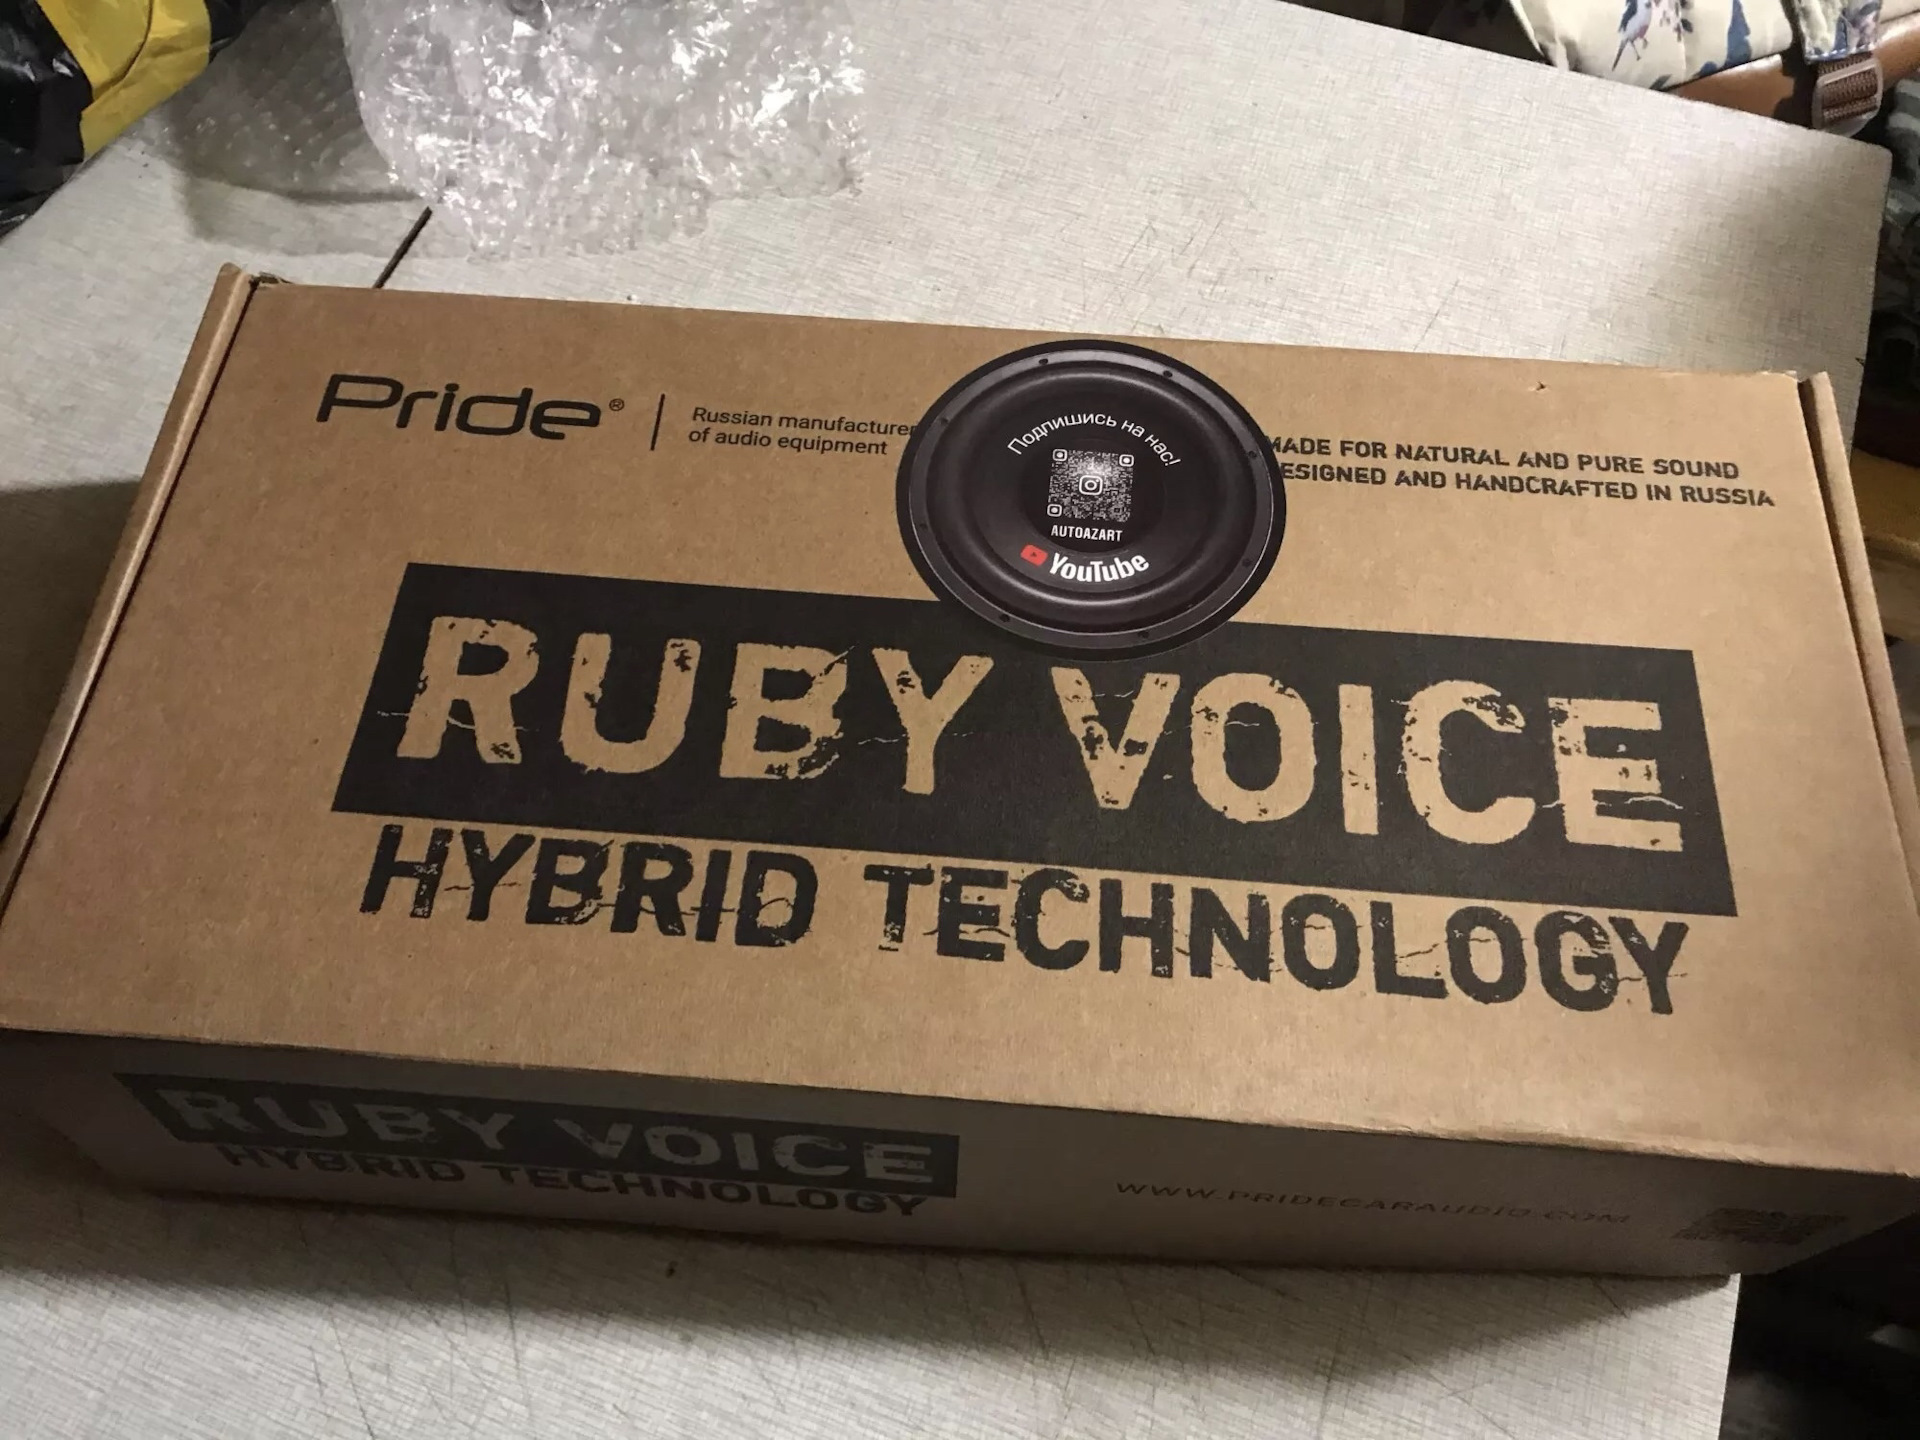 Ruby Voice. Характеристики на коробке Руби Войс. Сравнить колонки Pride solo Mini и Ruby Voice Hybrid Technology. Рубит на парах